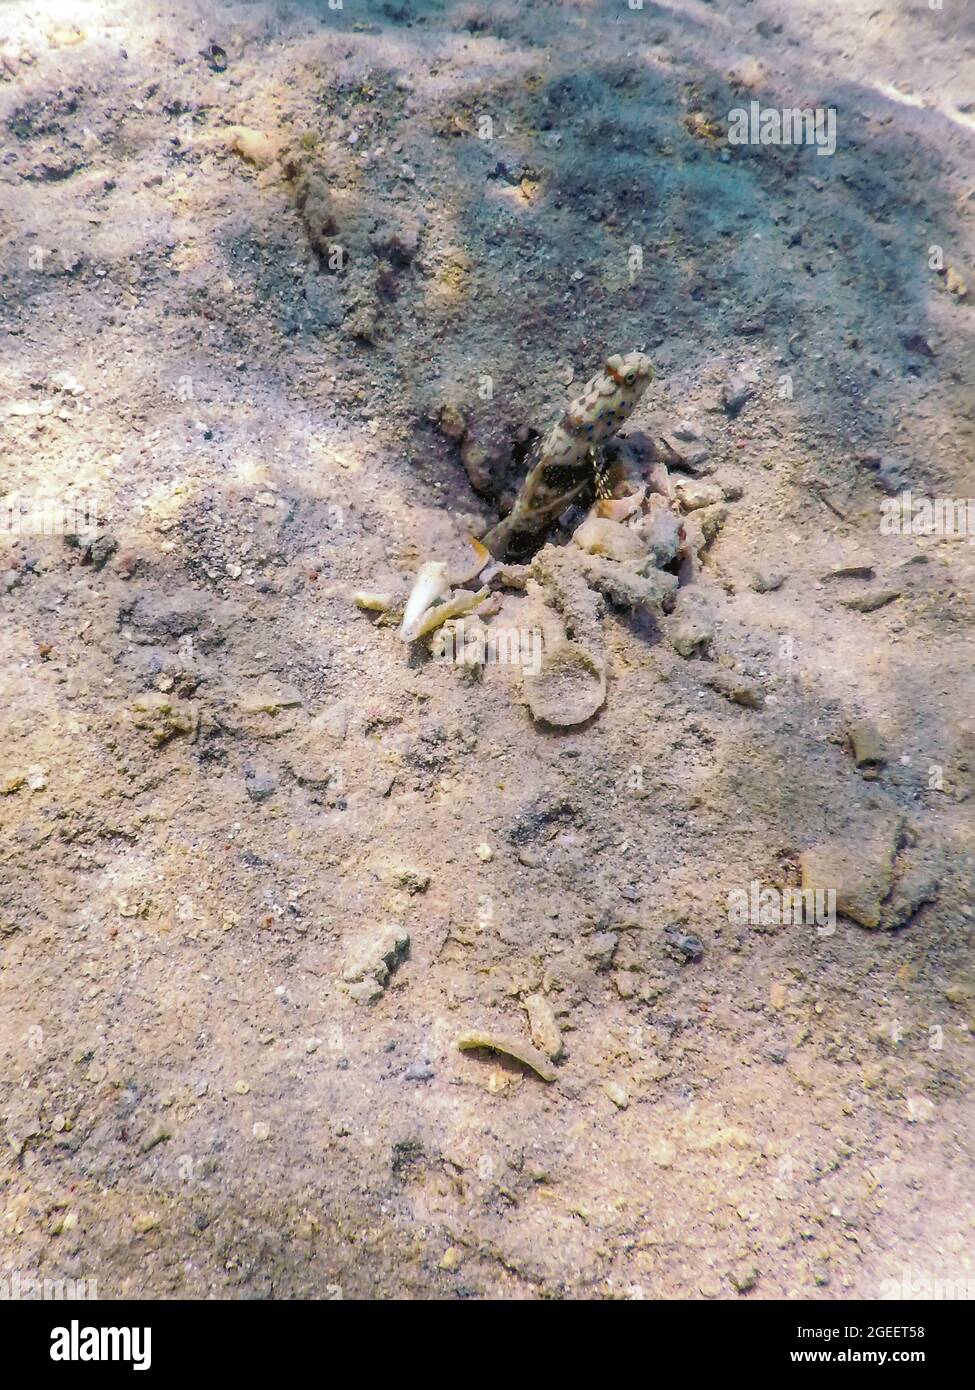 Spotted prawn goby (Amblyeleotris guttata) underwater, Marine life Stock Photo